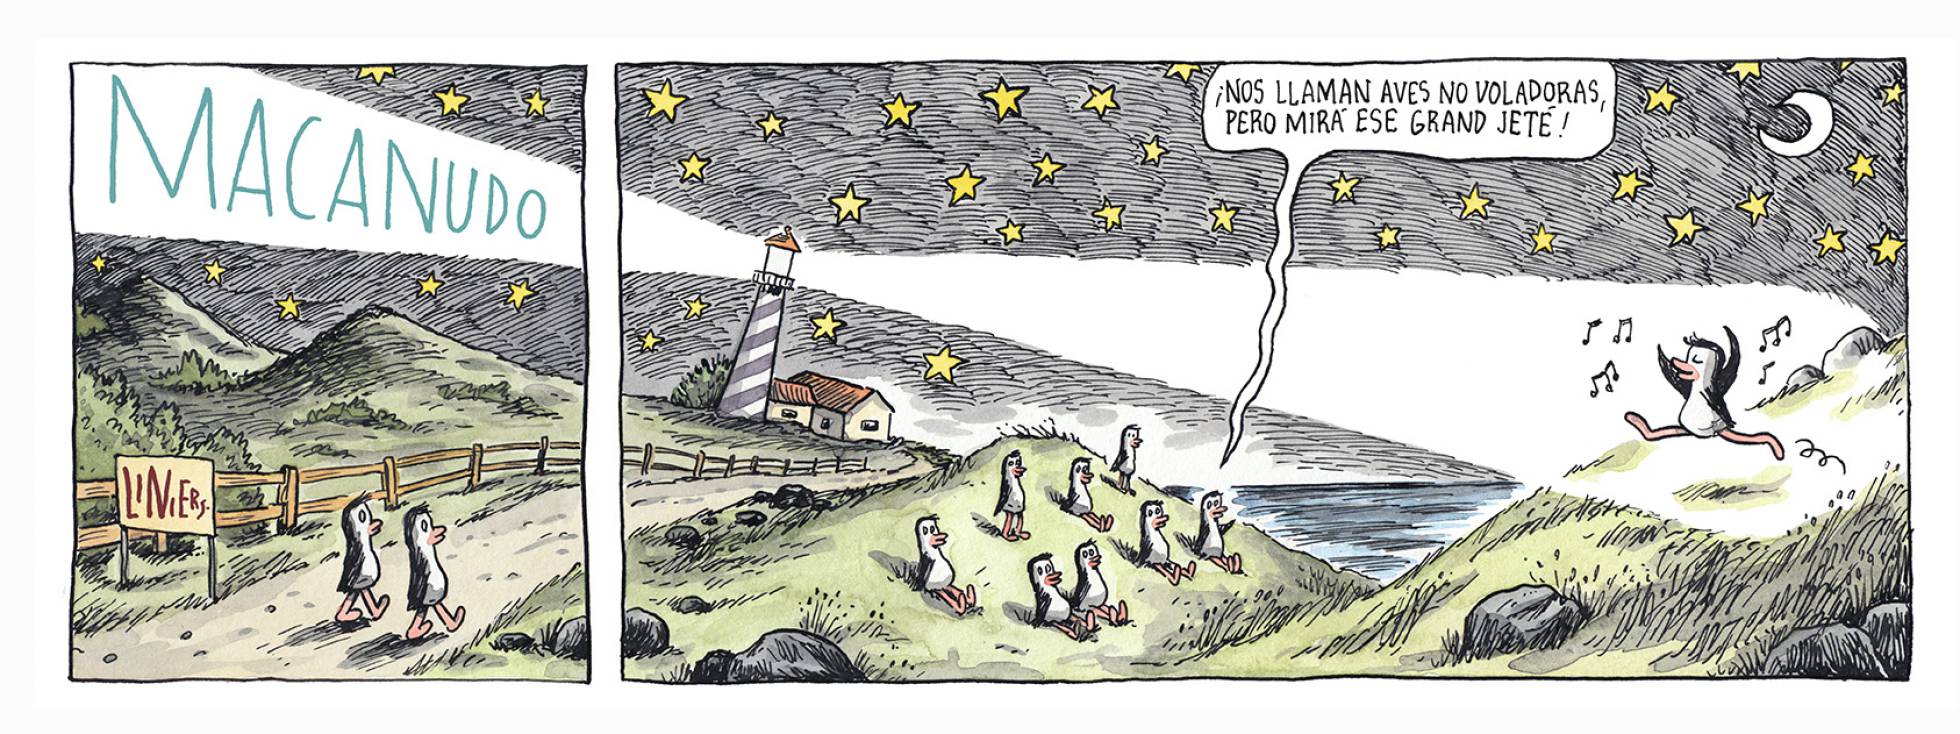 Liniers, en El País, 31/03/2019